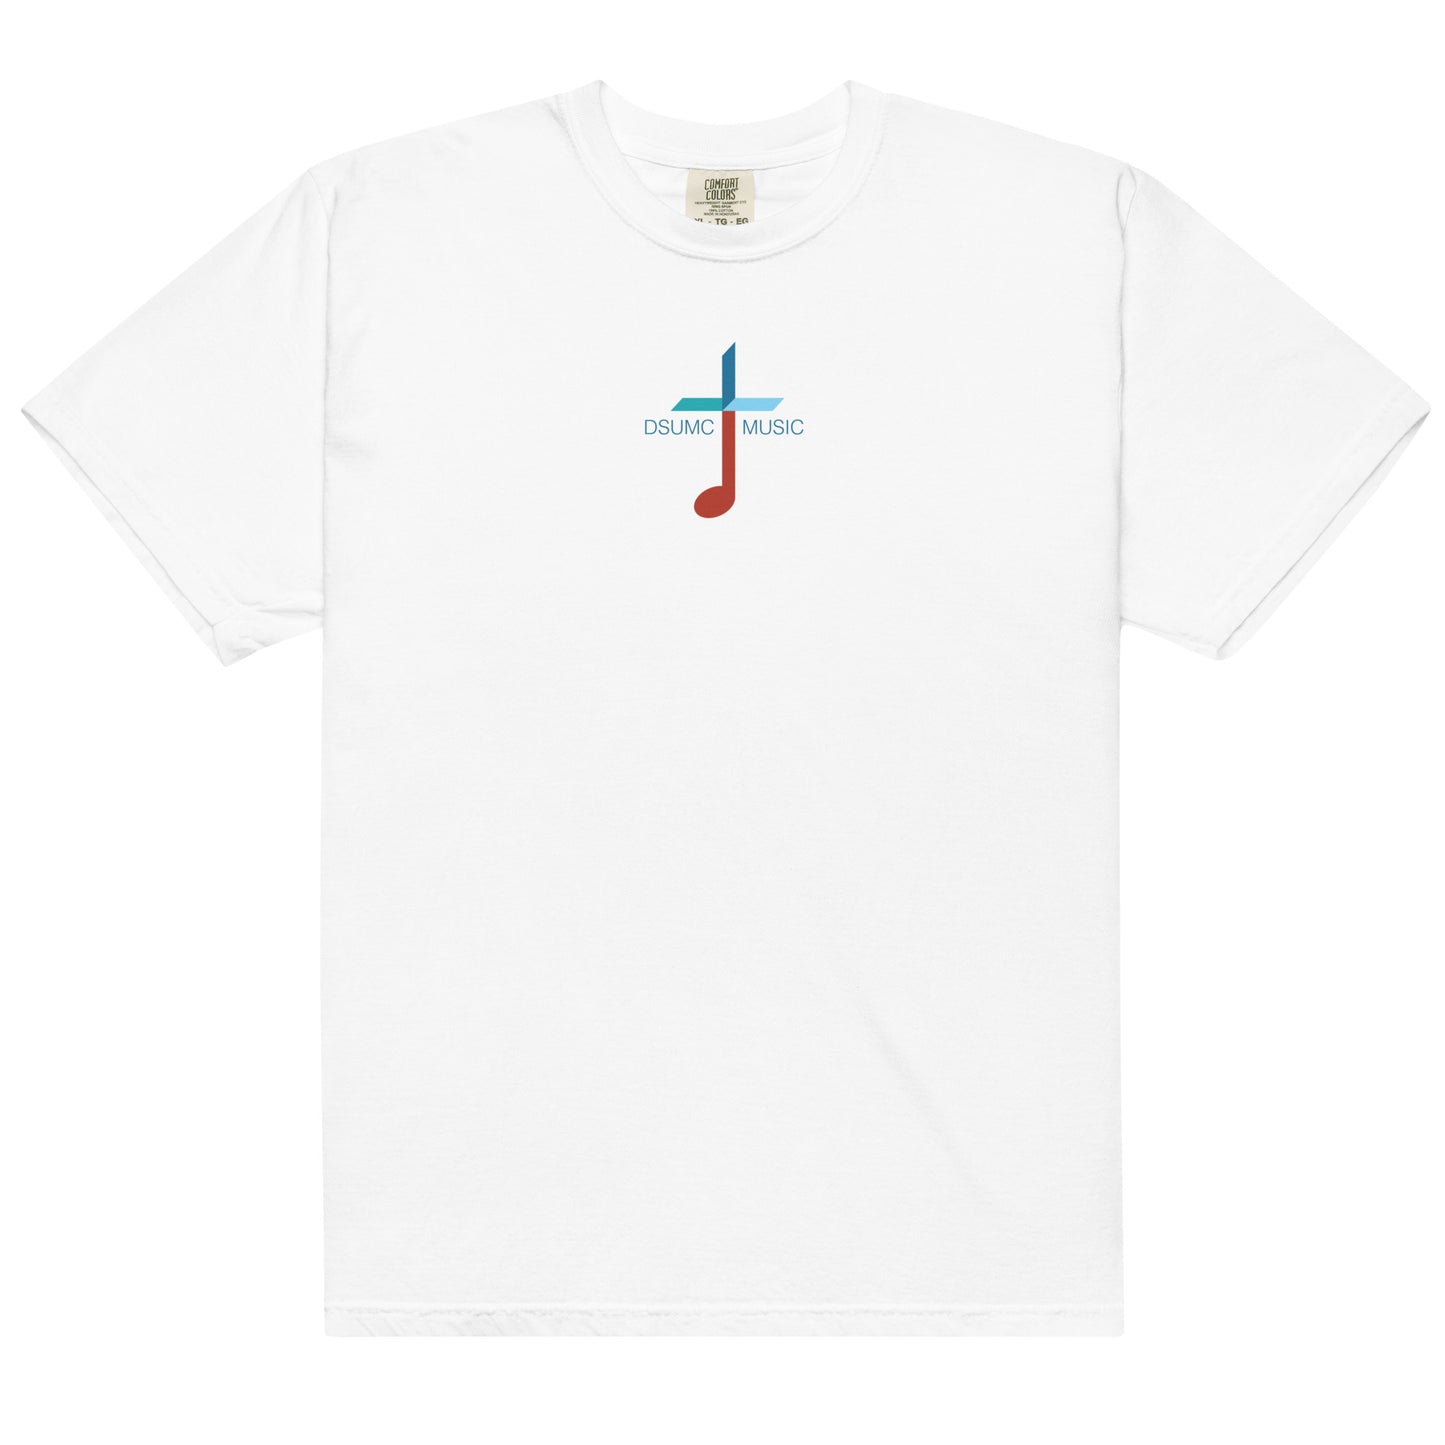 Men’s DSUMC Music T-shirt